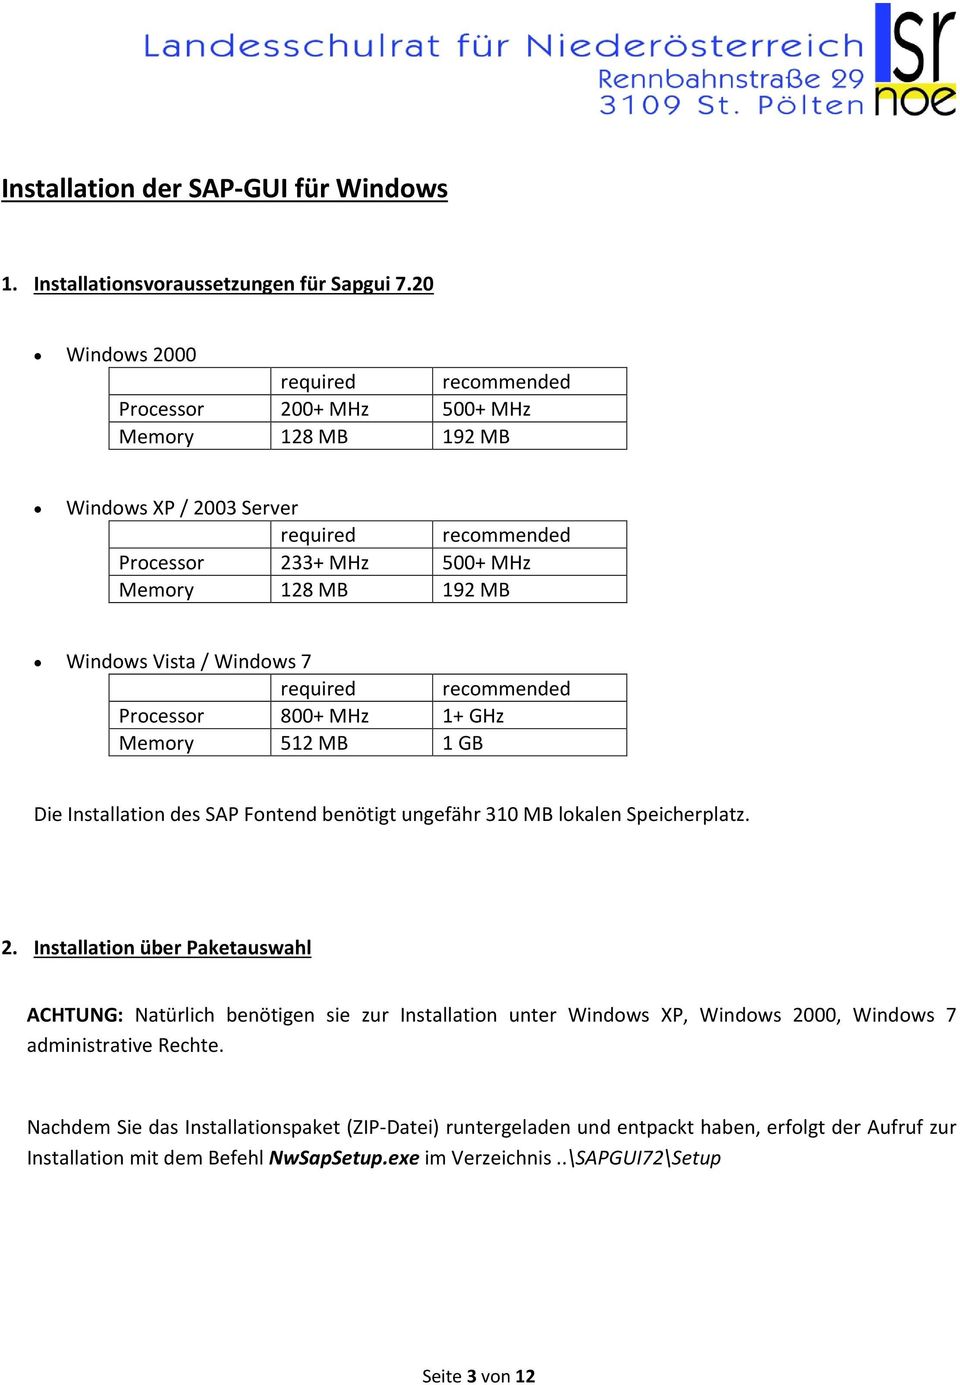 / Windows 7 required recommended Processor 800+ MHz 1+ GHz Memory 512 MB 1 GB Die Installation des SAP Fontend benötigt ungefähr 310 MB lokalen Speicherplatz. 2.